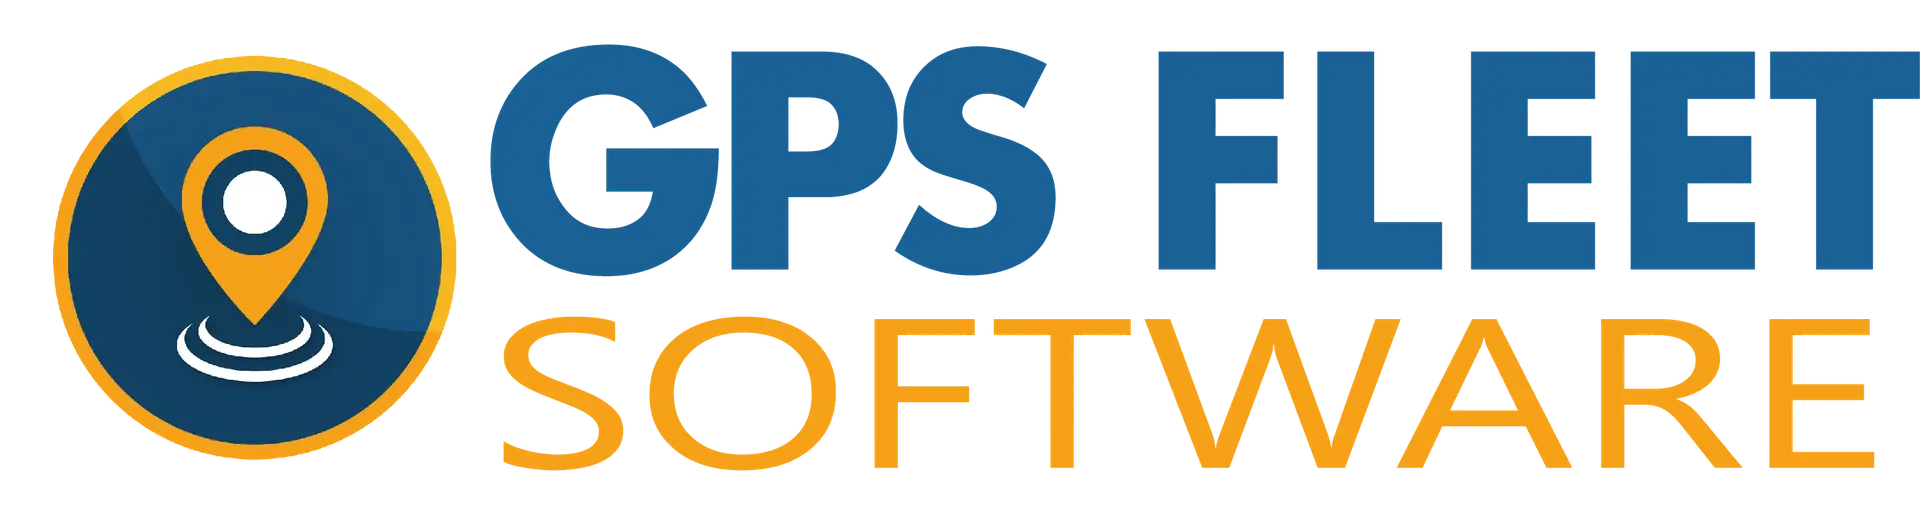 GPS Fleet Software Logo